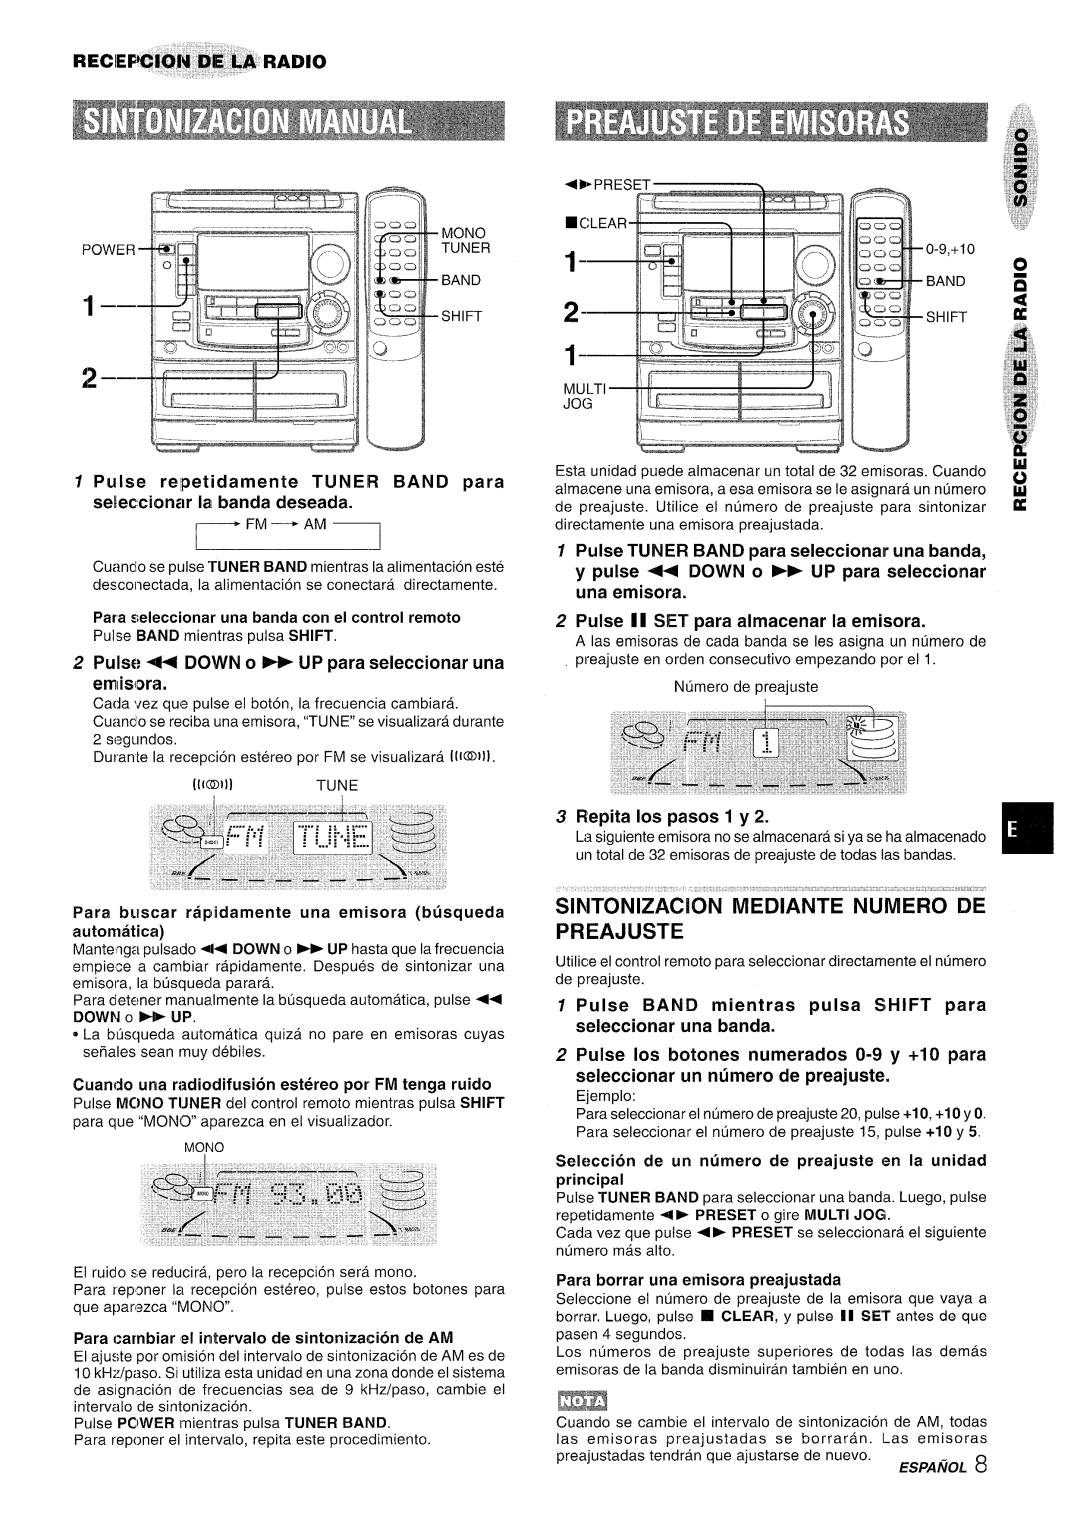 Aiwa NSX-A508 manual ‘- d LJ, Sintonizacion Mediante Numero De Preajuste, Pulse relpetidamente TUNER BAND para 